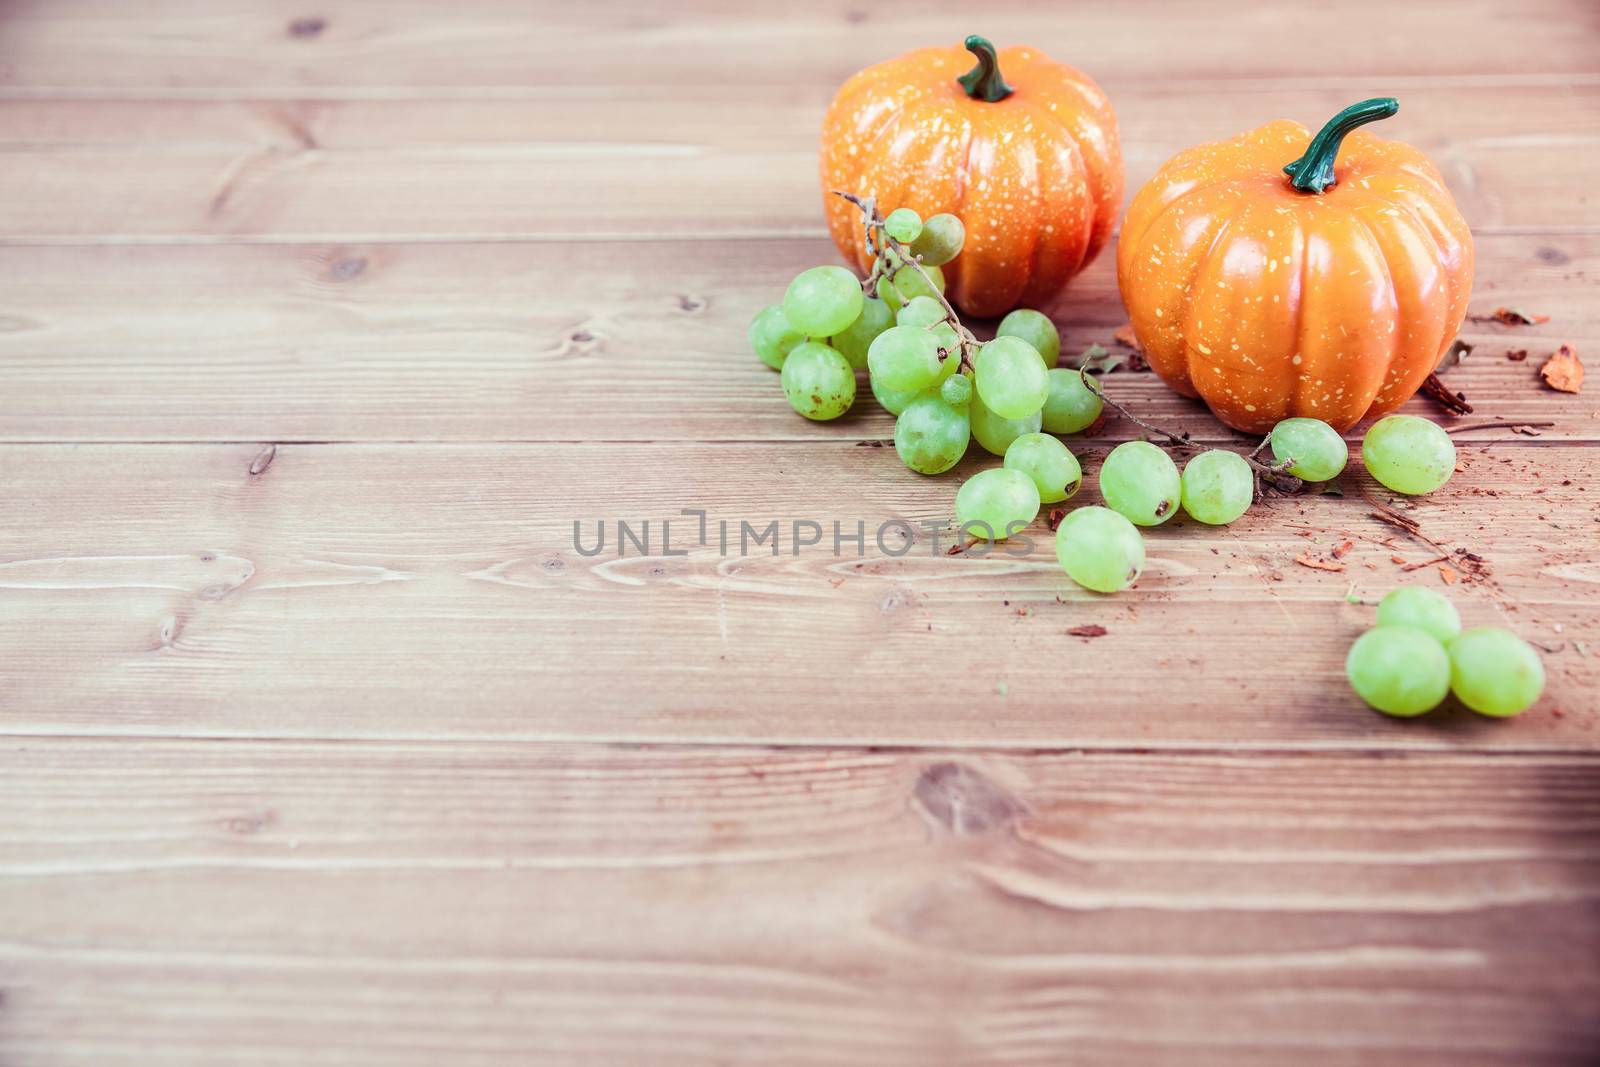 Pumpkin ornaments on desk by Wavebreakmedia